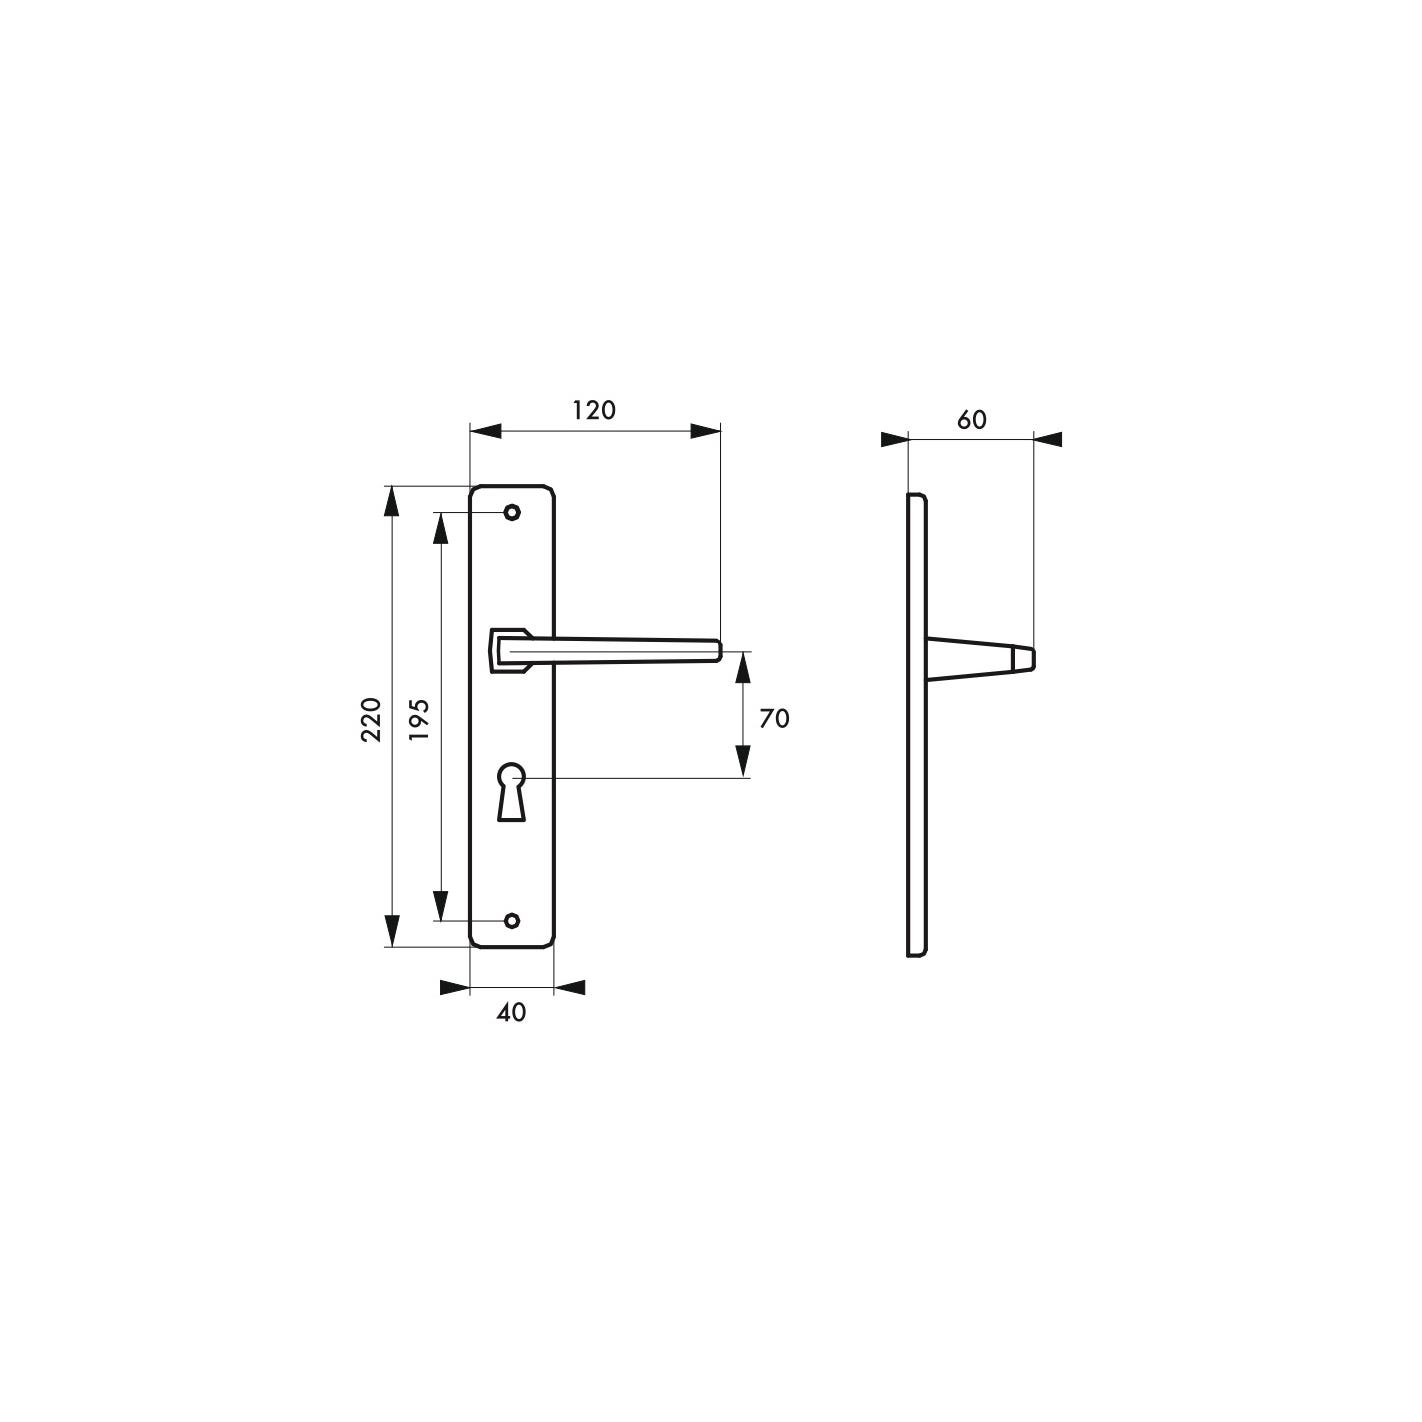 THIRARD - Ensemble de poignées pour porte intérieure Picardie trou de clé, carré 7mm, entr'axes 195mm, couleur F2 2